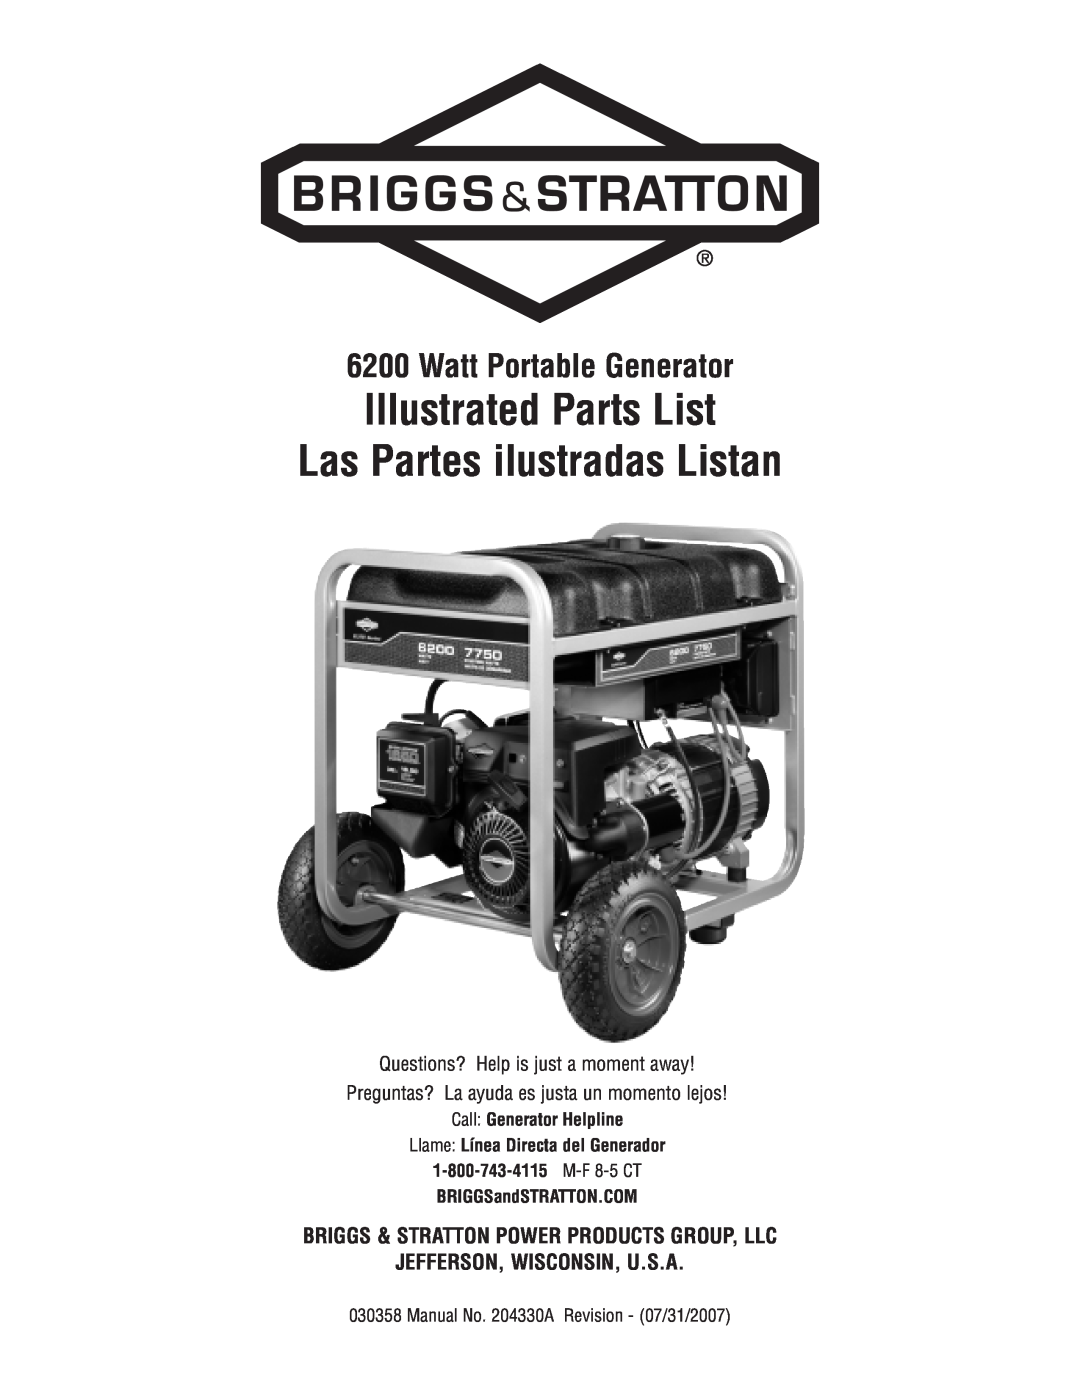 Briggs & Stratton 30358 manual Watt Portable Generator, Call Generator Helpline, Llame Línea Directa del Generador 